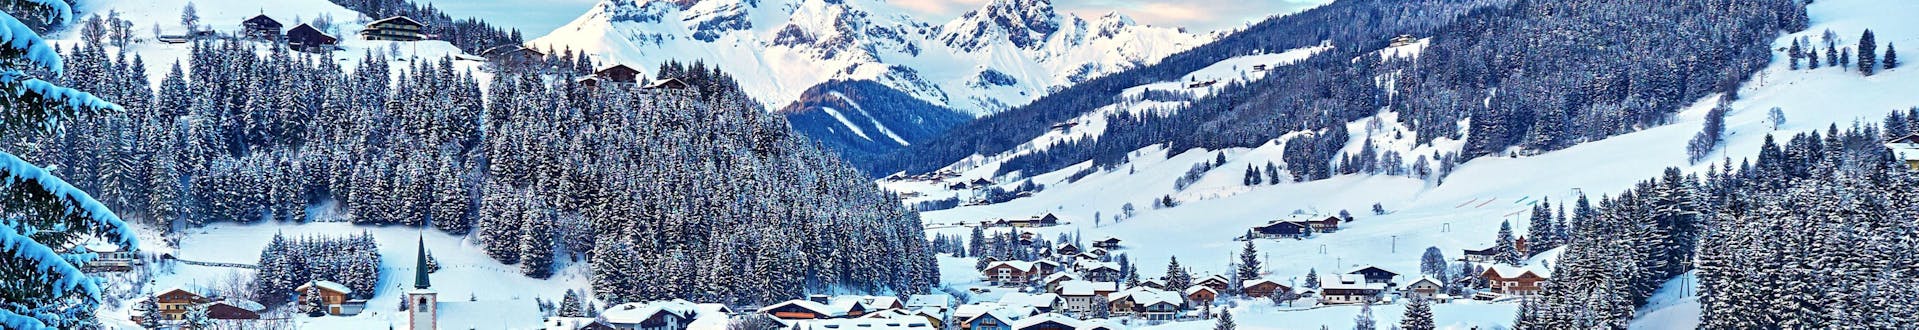 Stad Filzmoos, Oostenrijk, vlakbij de pistes waar u skilessen kunt boeken.